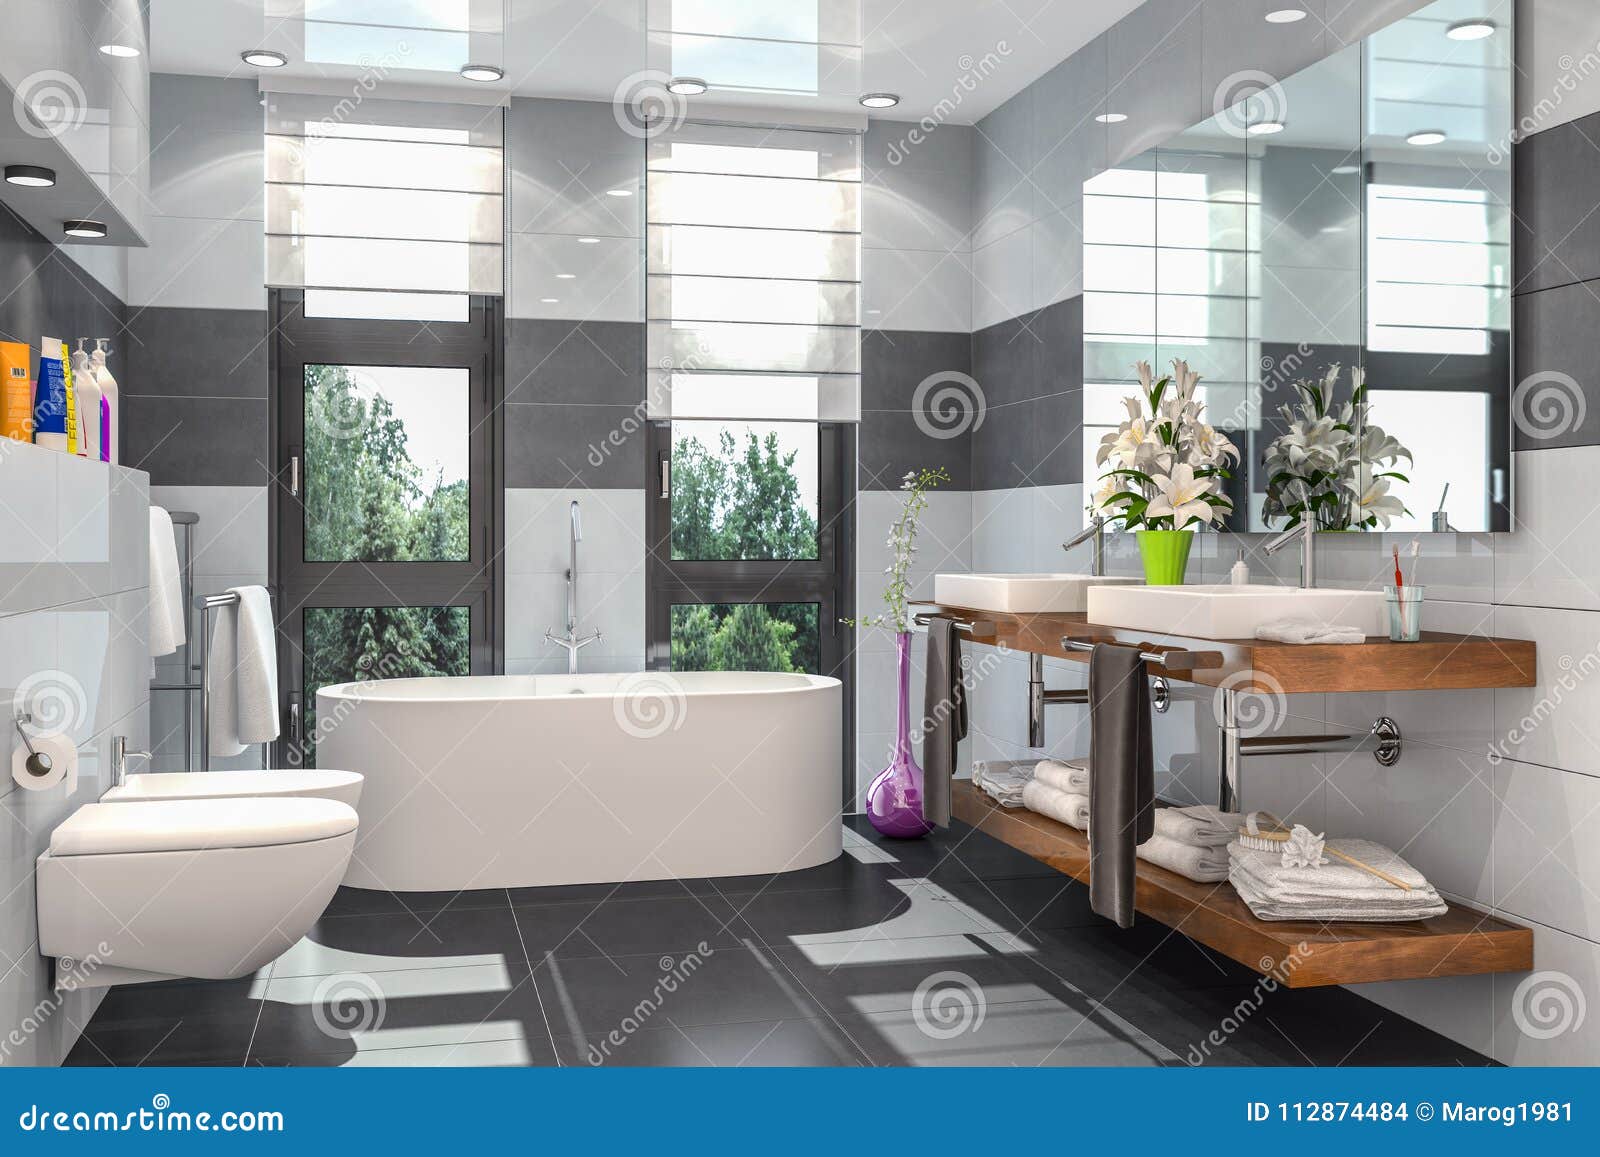 3d Render of a Modern Bathroom Stock Illustration - Illustration of ...